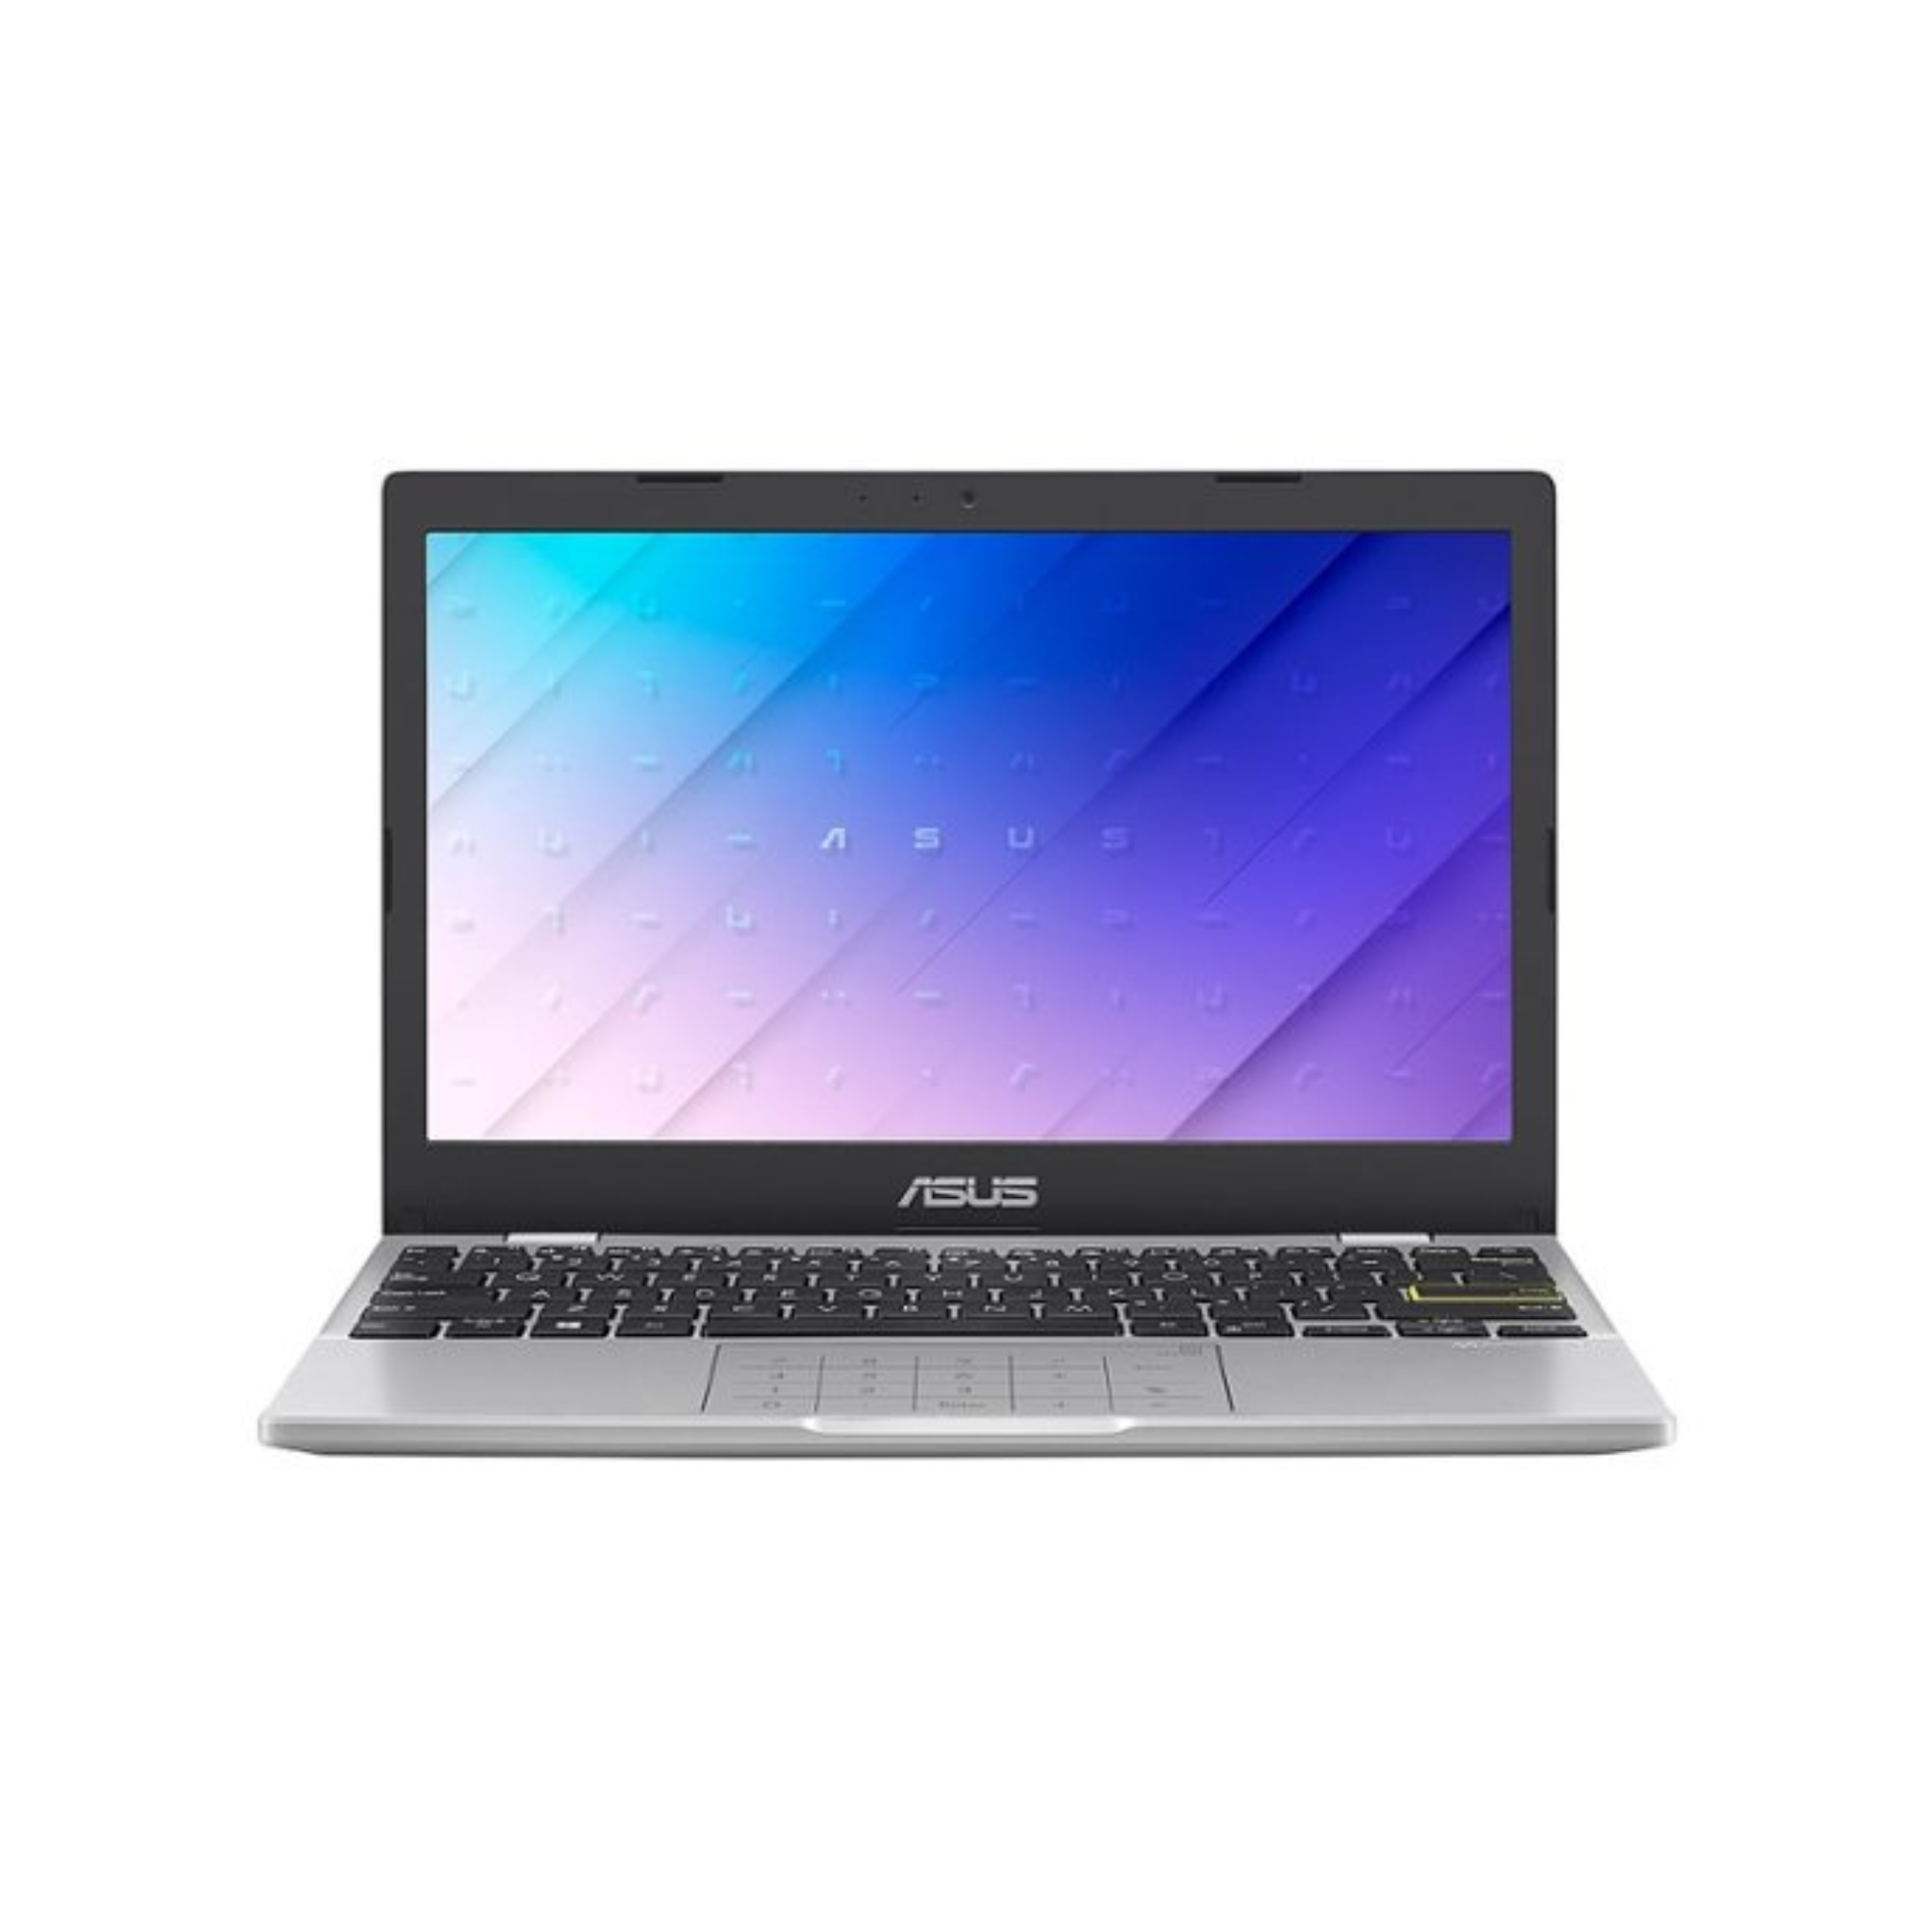 Asus L210 11.6" HD Laptop